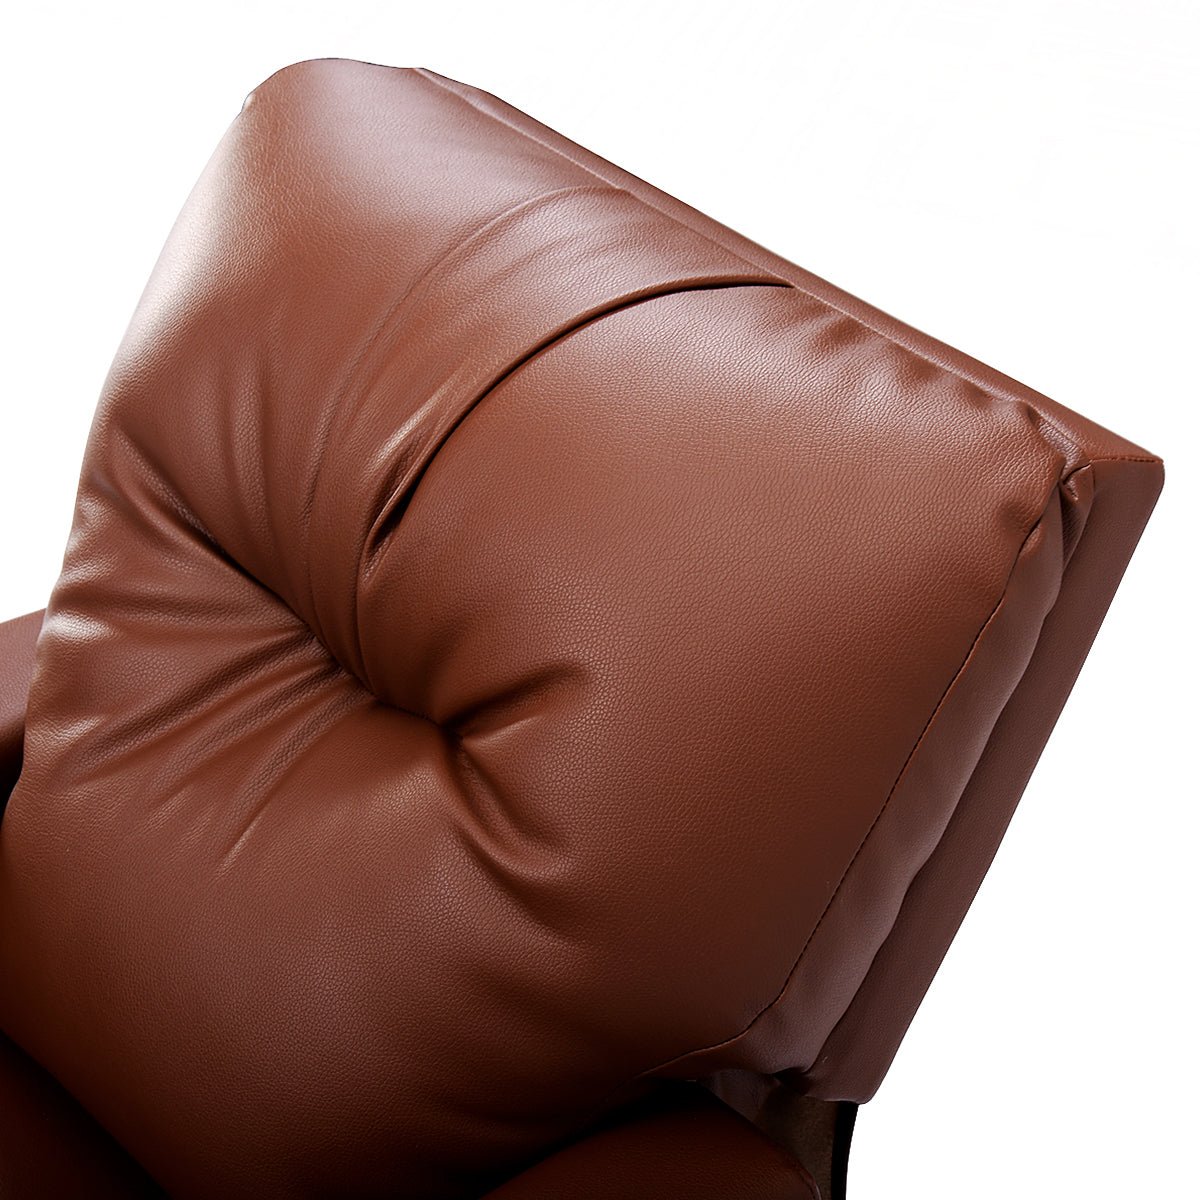 Brown Kids Lounge Seat: Adjustable Elegance with High Backrest and Armrest